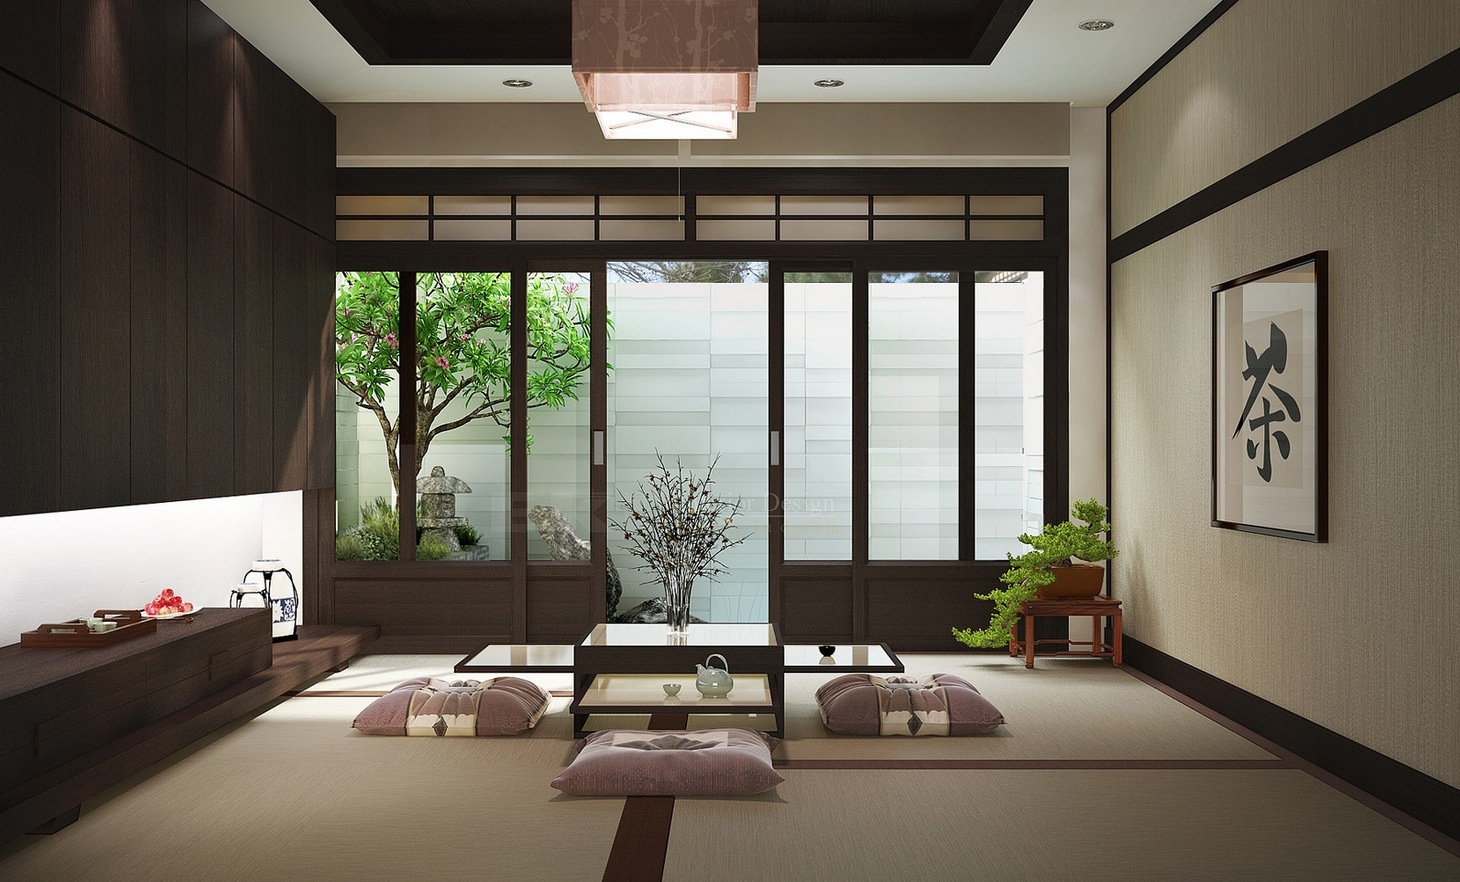 Zen Inspired Interior Design, Japanese Themed Home Decor